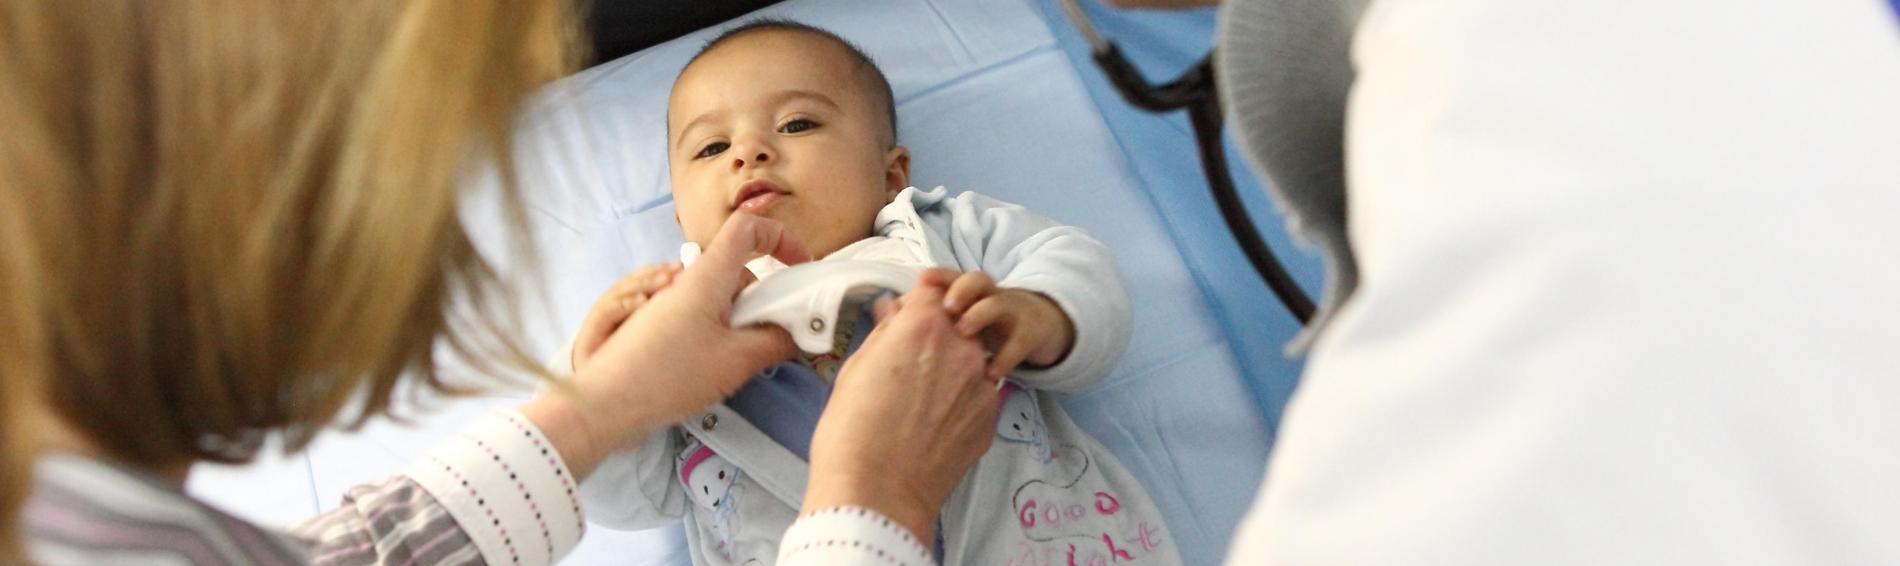 Een dokter met een witte jas waarop ons logo staat onderzoekt met zijn stethoscoop een baby die recht in de lens kijkt terwijl de mama haar kind tracht te kalmeren.